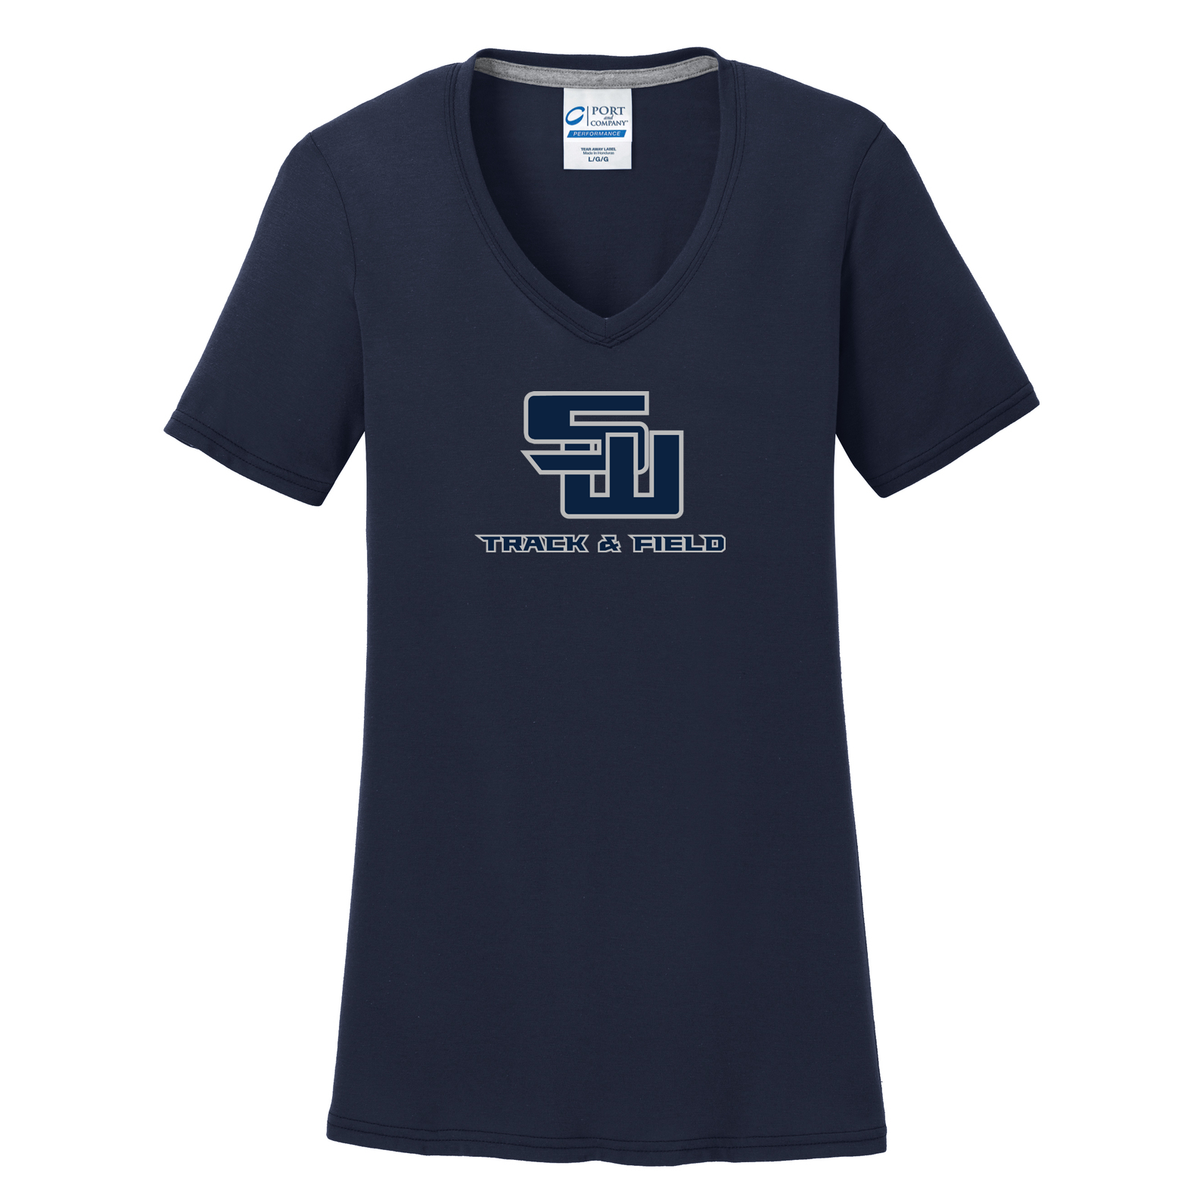 Smithtown West T&F Women's T-Shirt